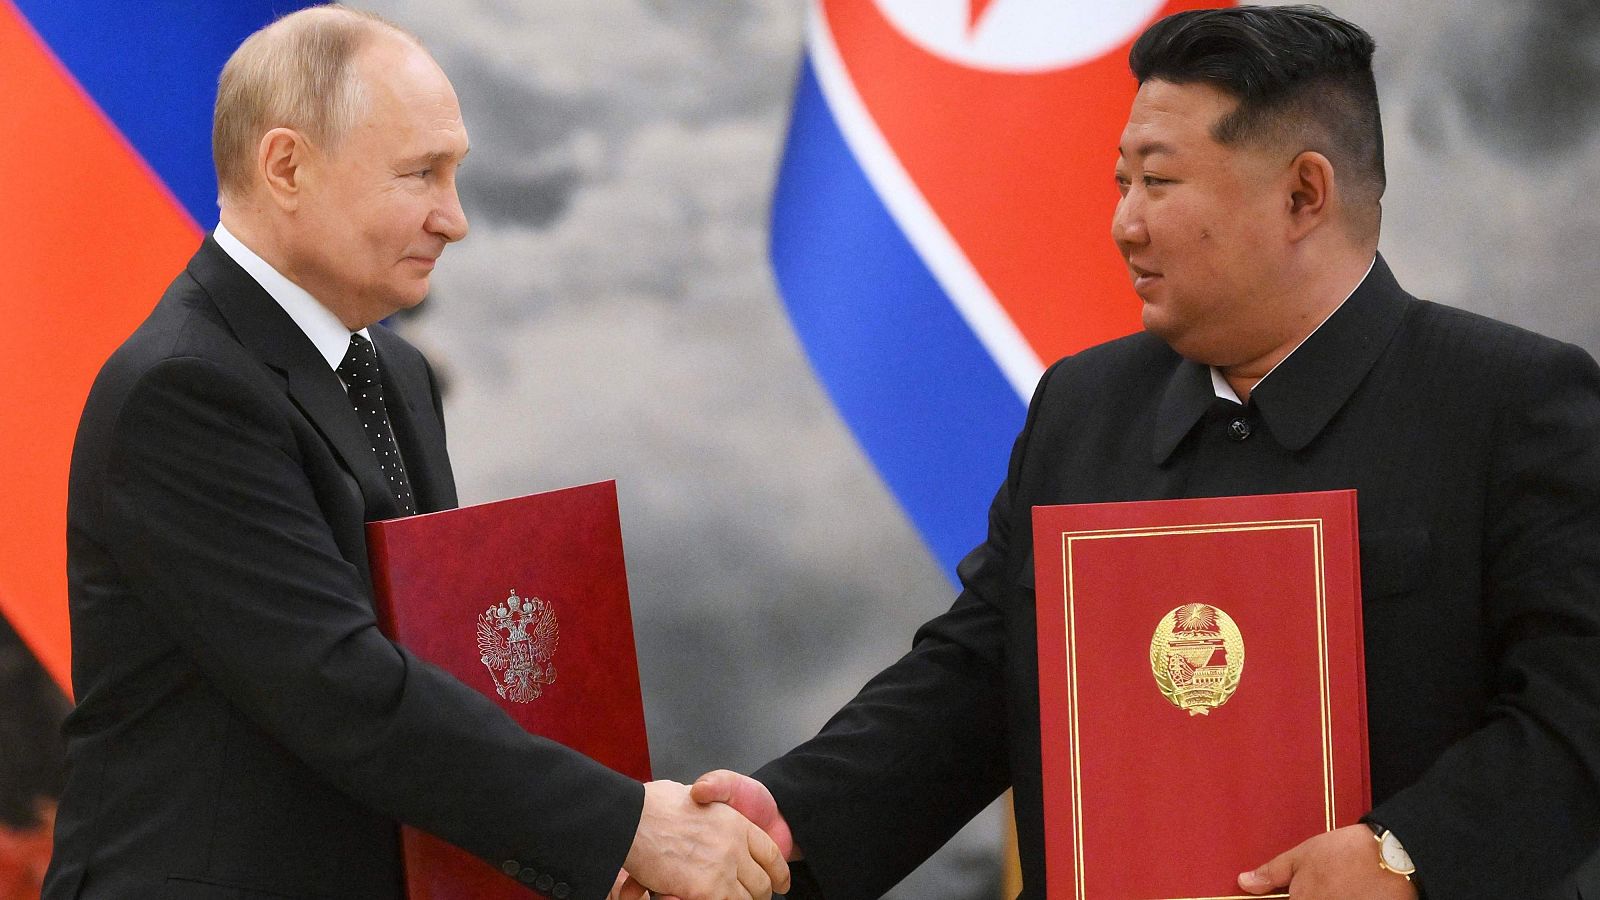 Cinco continentes - Corea del Norte y Rusia, un reforzamiento de la alianza - Escuchar ahora